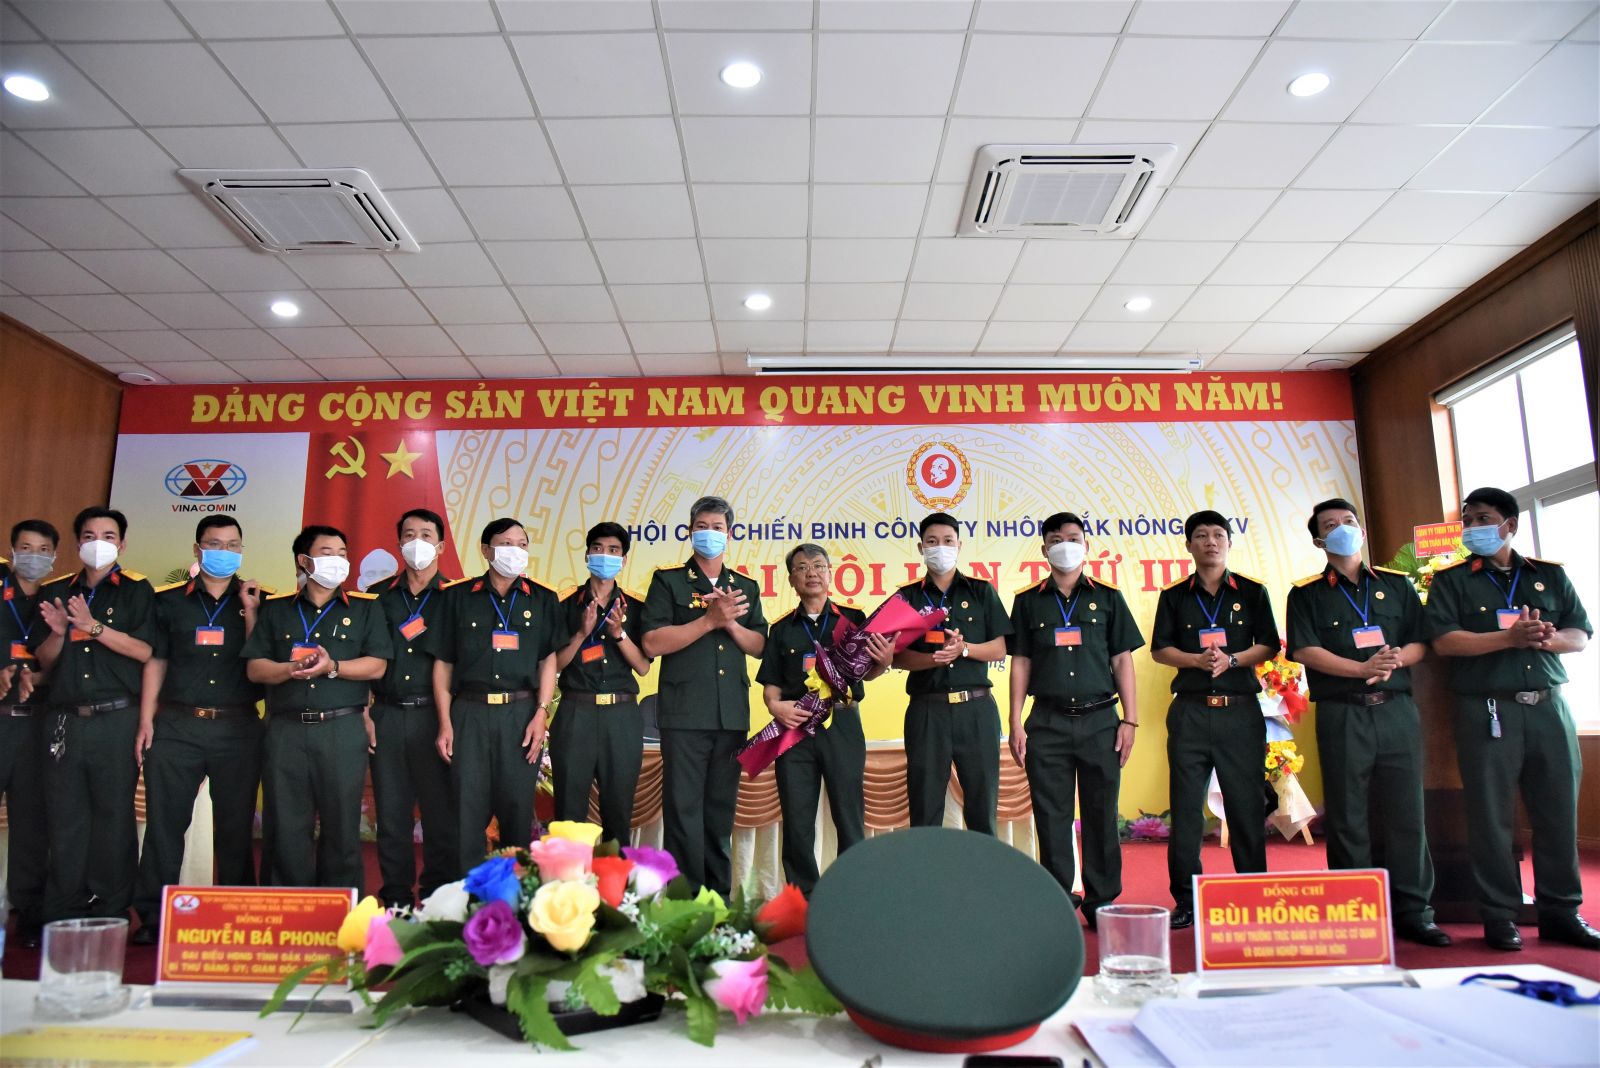 Đại hội Hội Cựu chiến binh Công ty Nhôm Đắk Nông - TKV lần thứ III